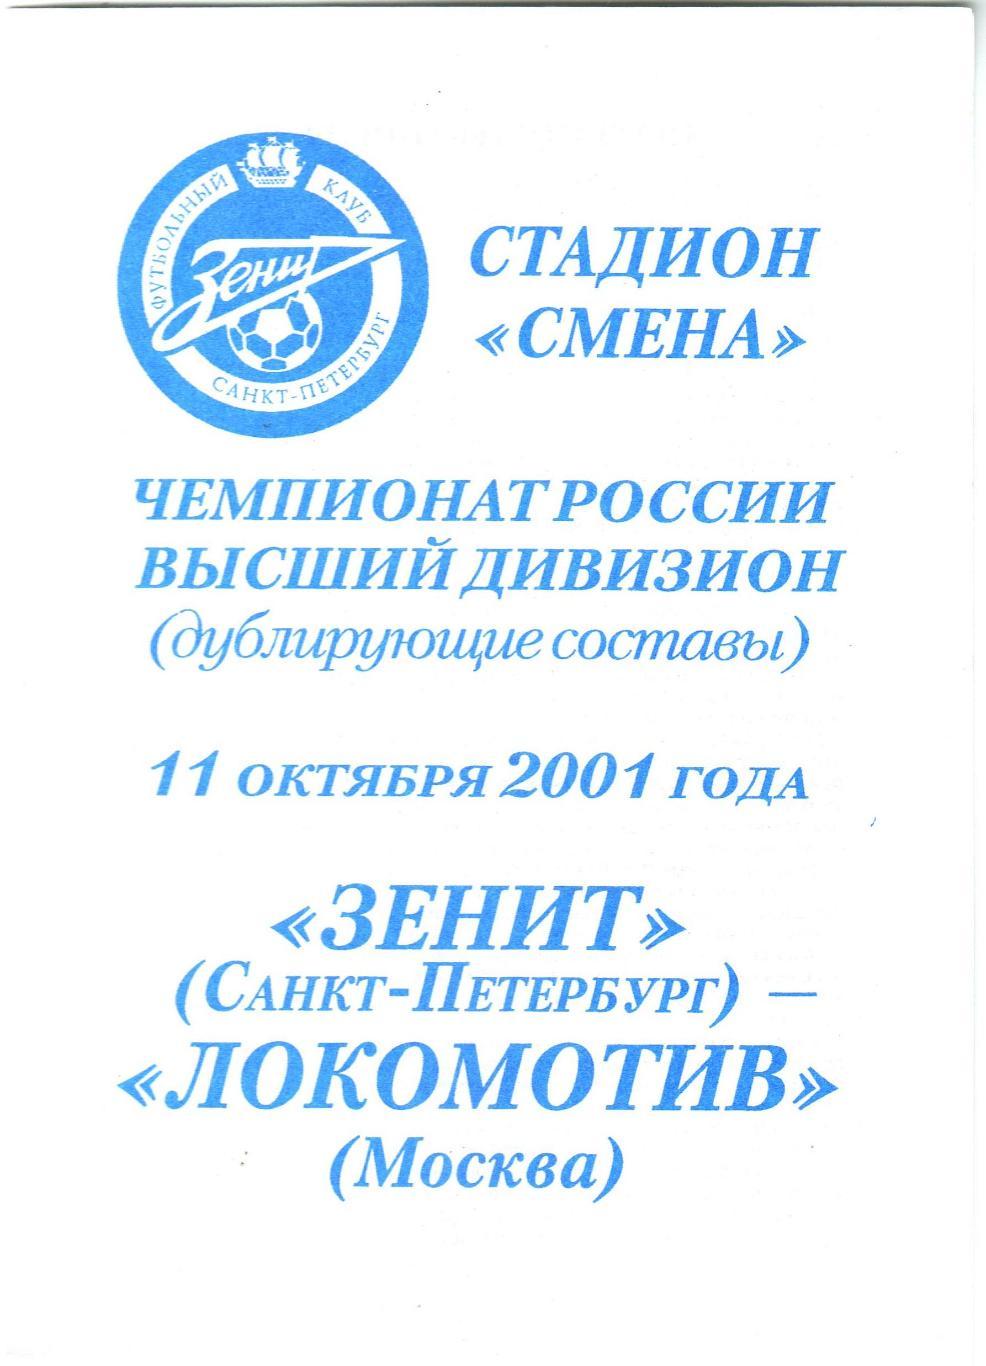 Зенит Санкт-Петербург – Локомотив Москва 11.10.2001 Дублирующие составы